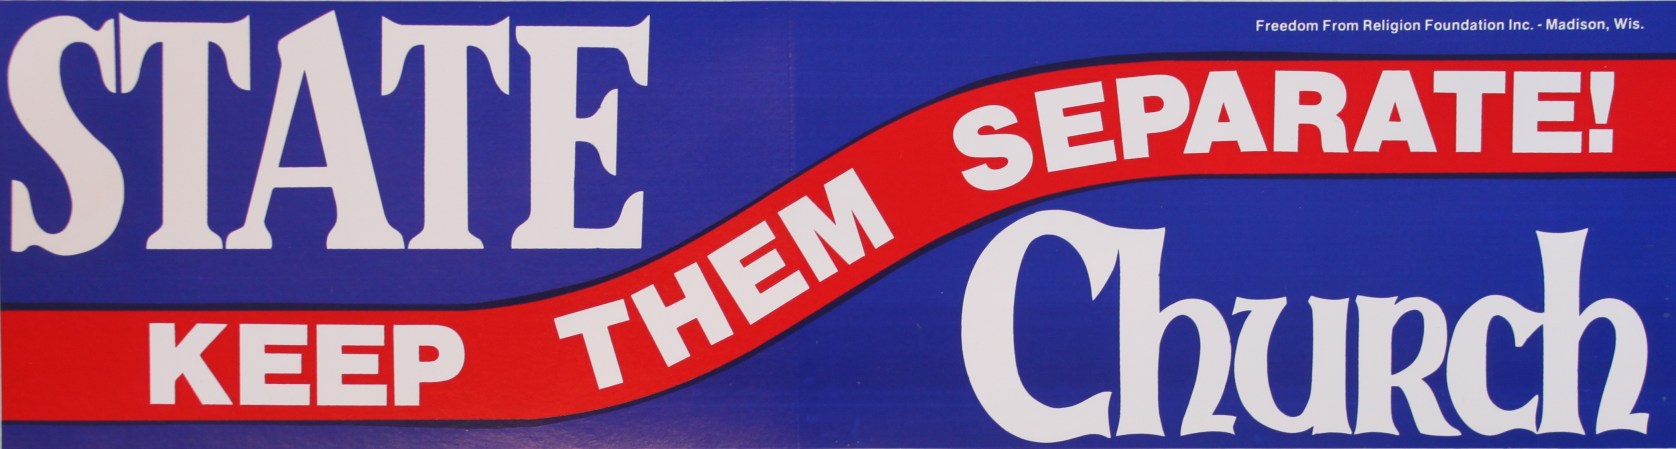 State-church keep them separate bumper sticker